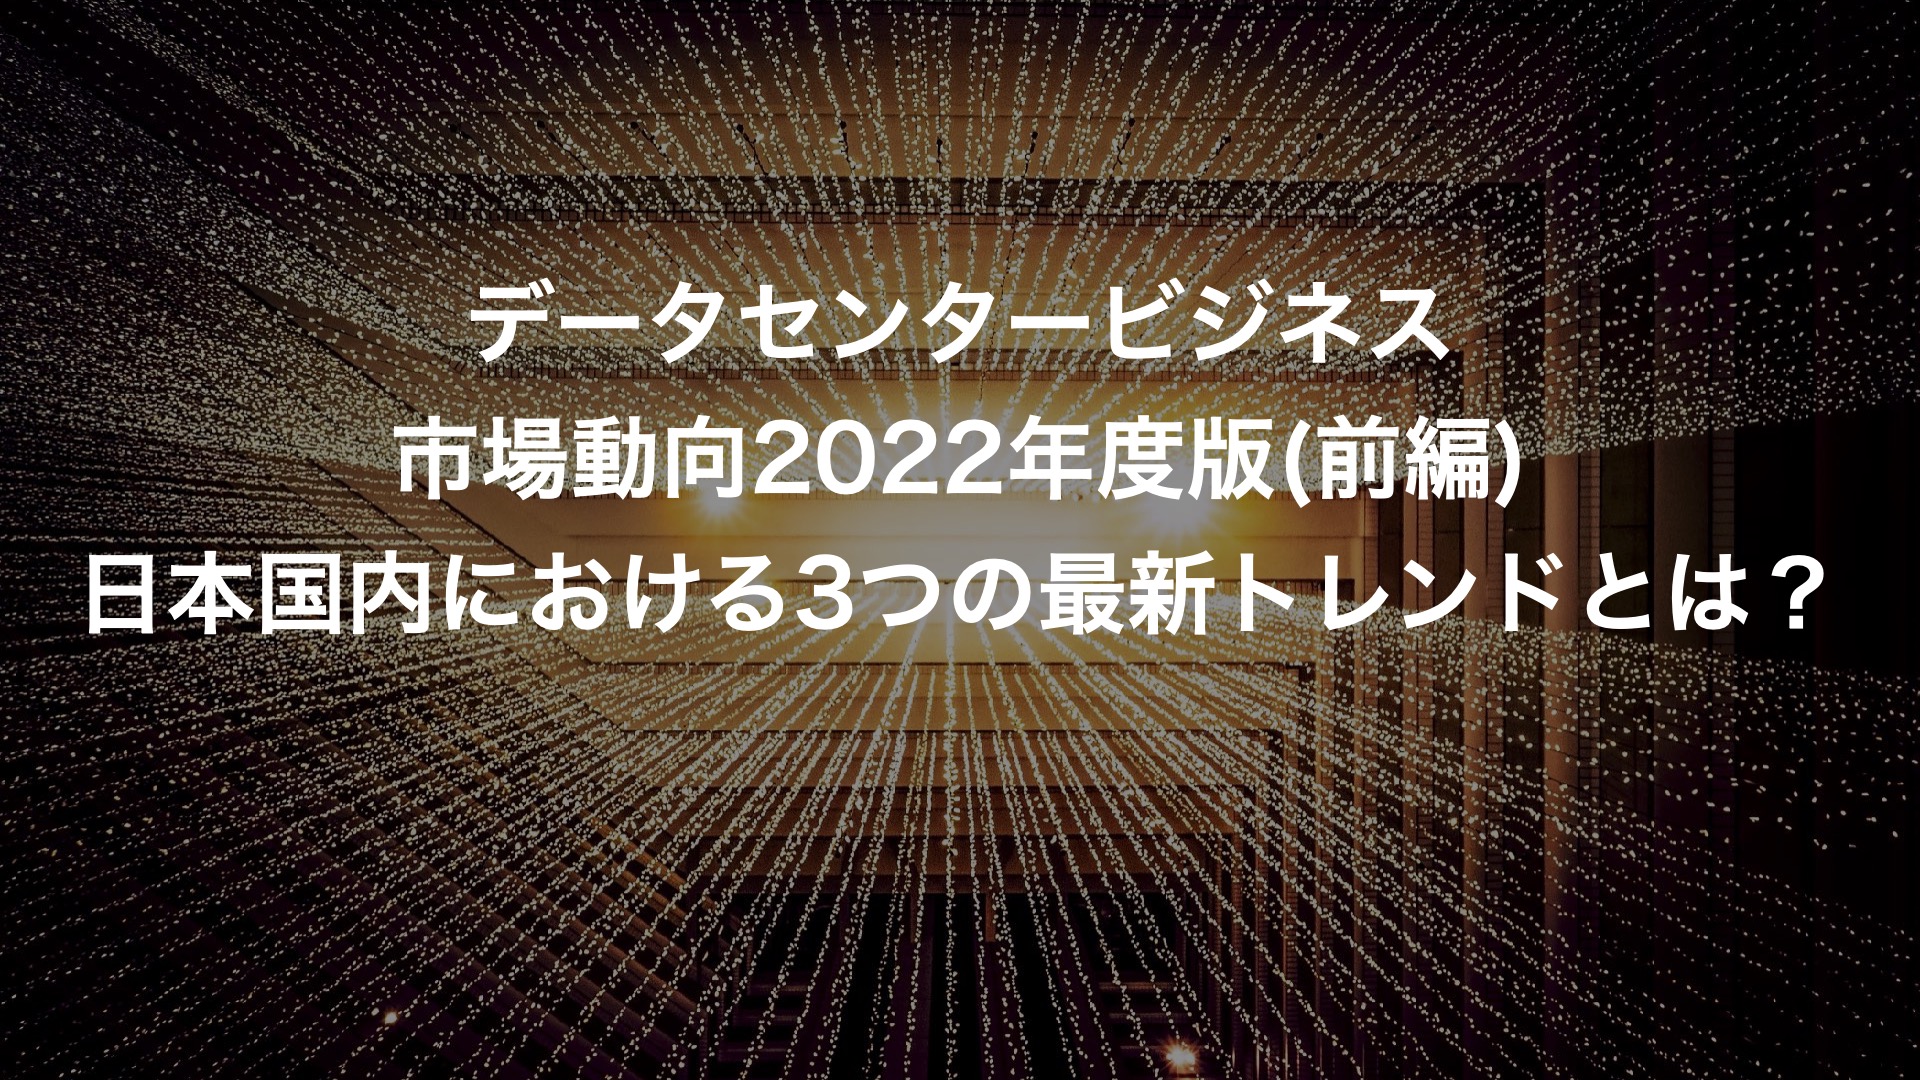 データセンタービジネス市場動向2022年度版(前編)日本国内における3 